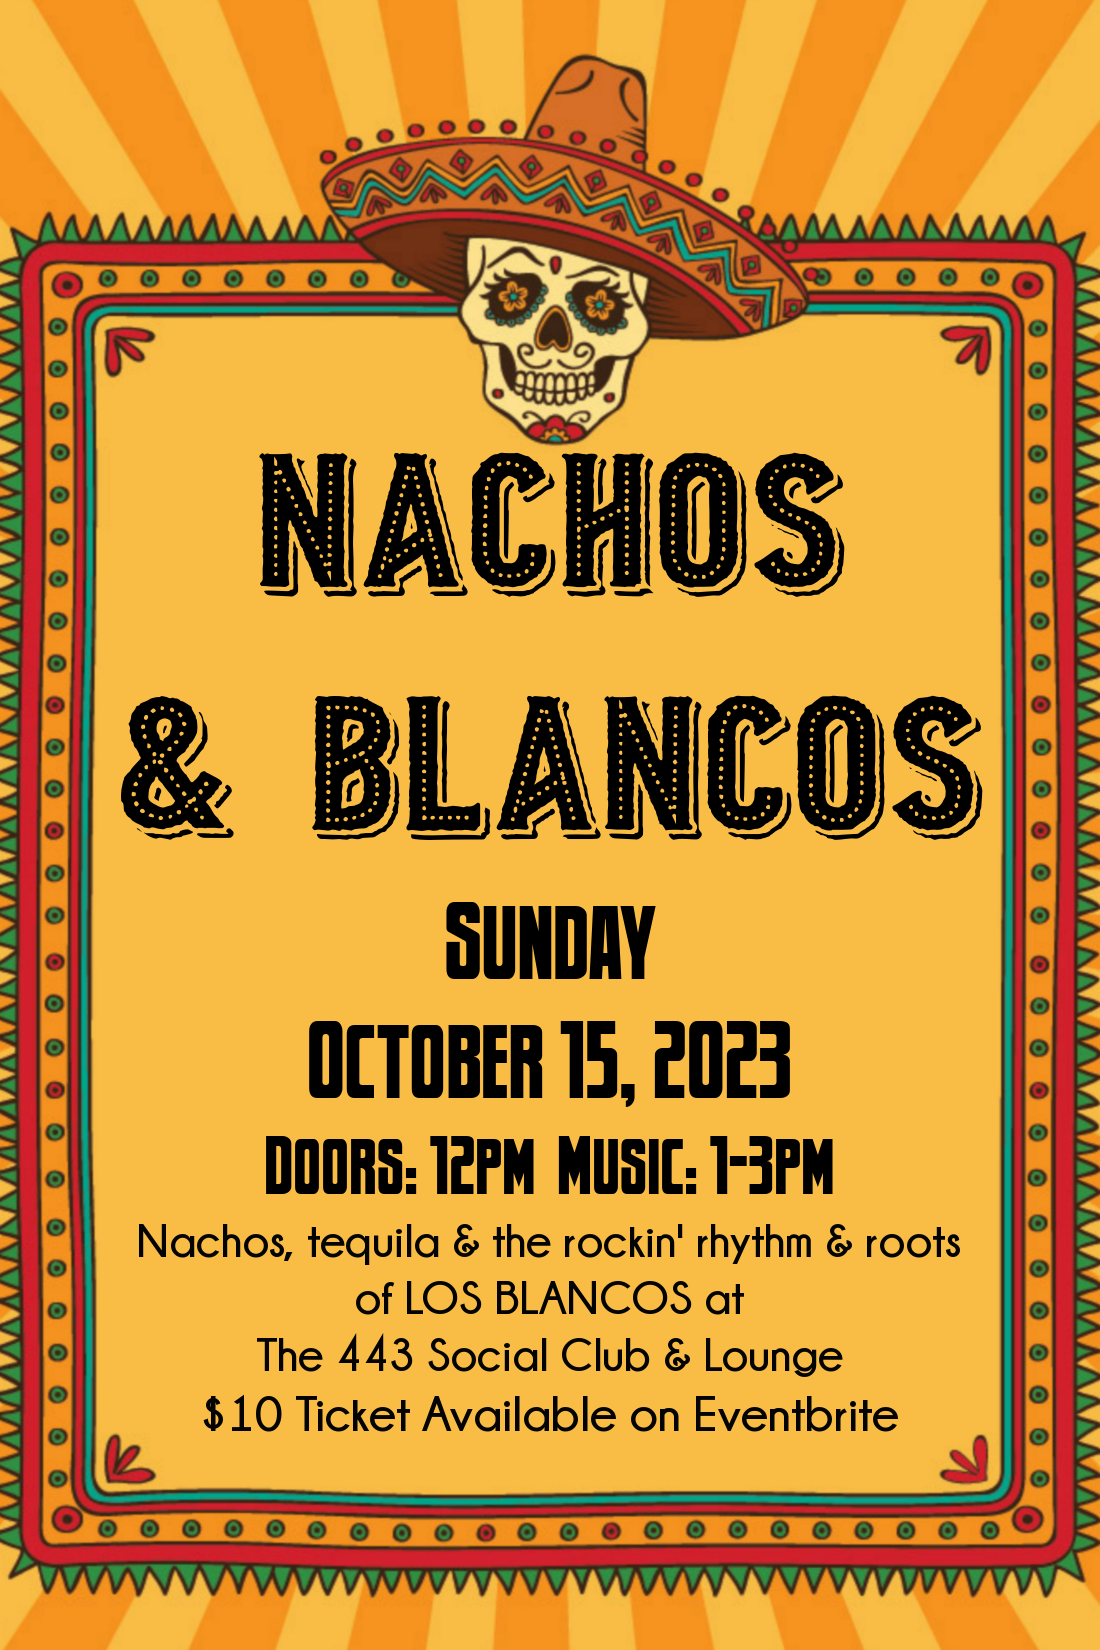 Nachos & Blancos October